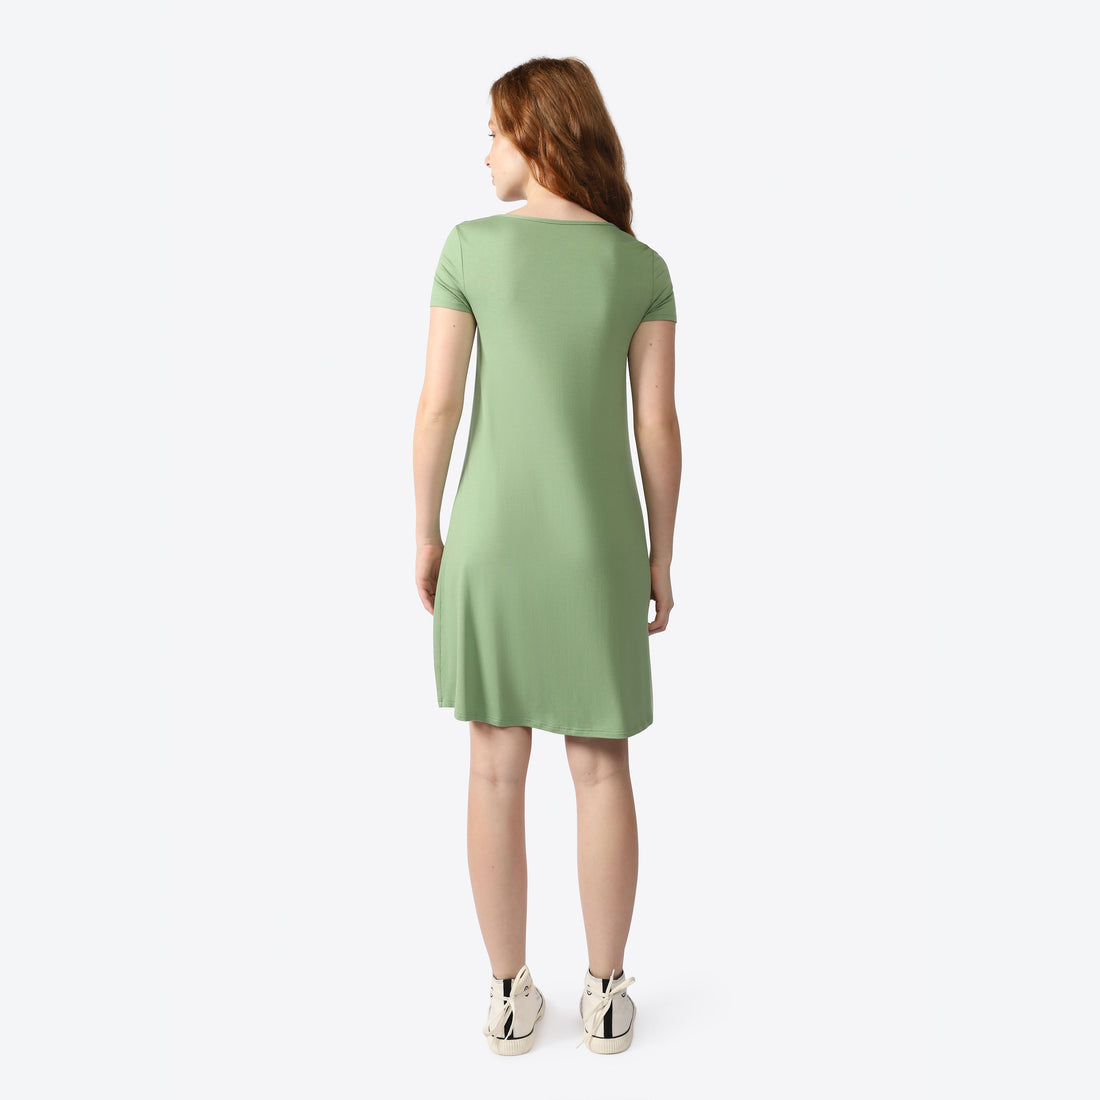 Vestido Curto Viscose Feminino - Verde Jade